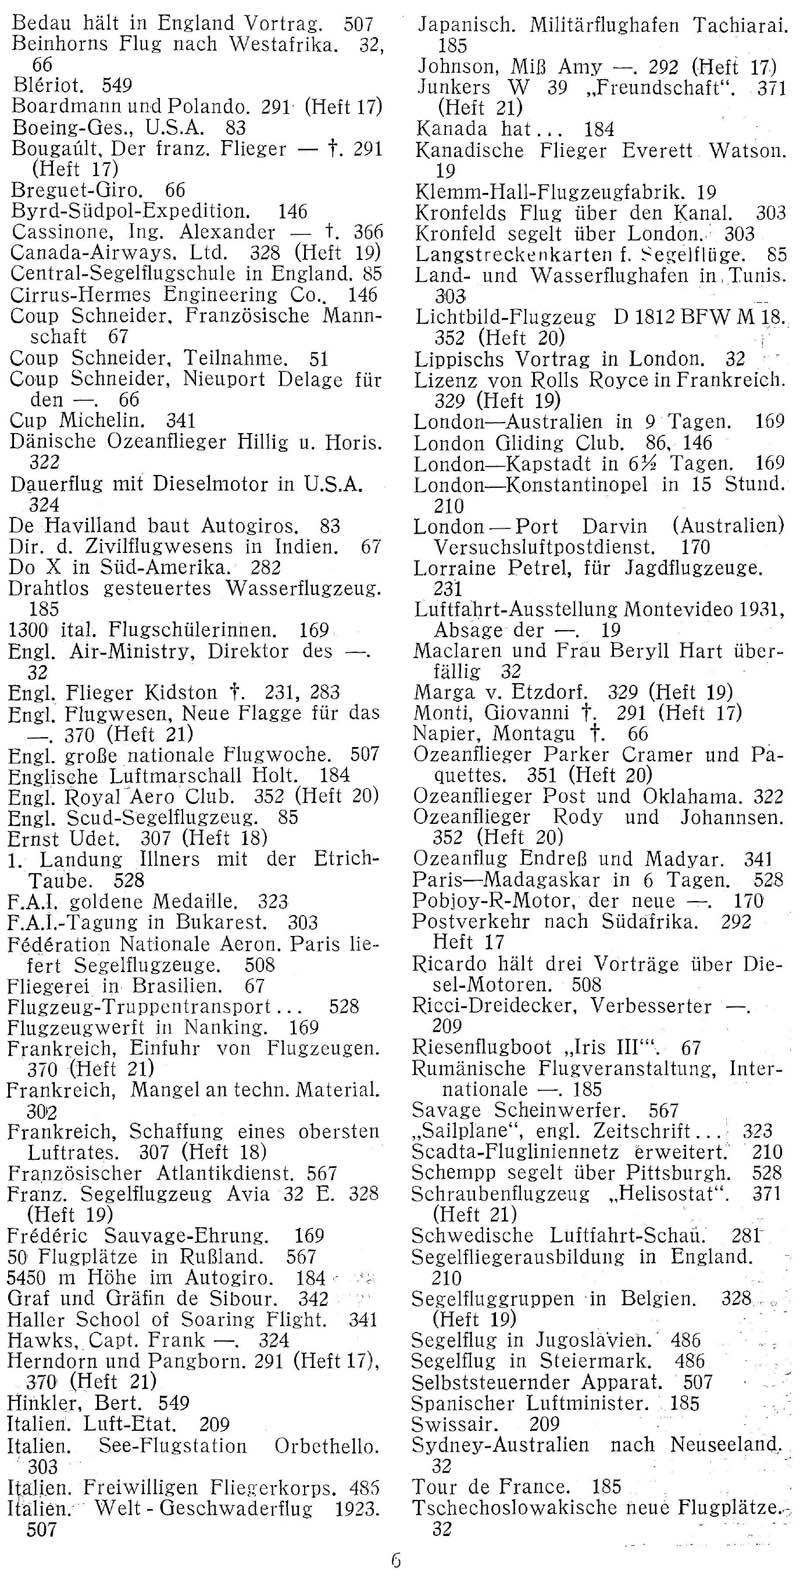 Sachregister und Inhaltsverzeichnis der Zeitschrift Flugsport für das Jahr 1931